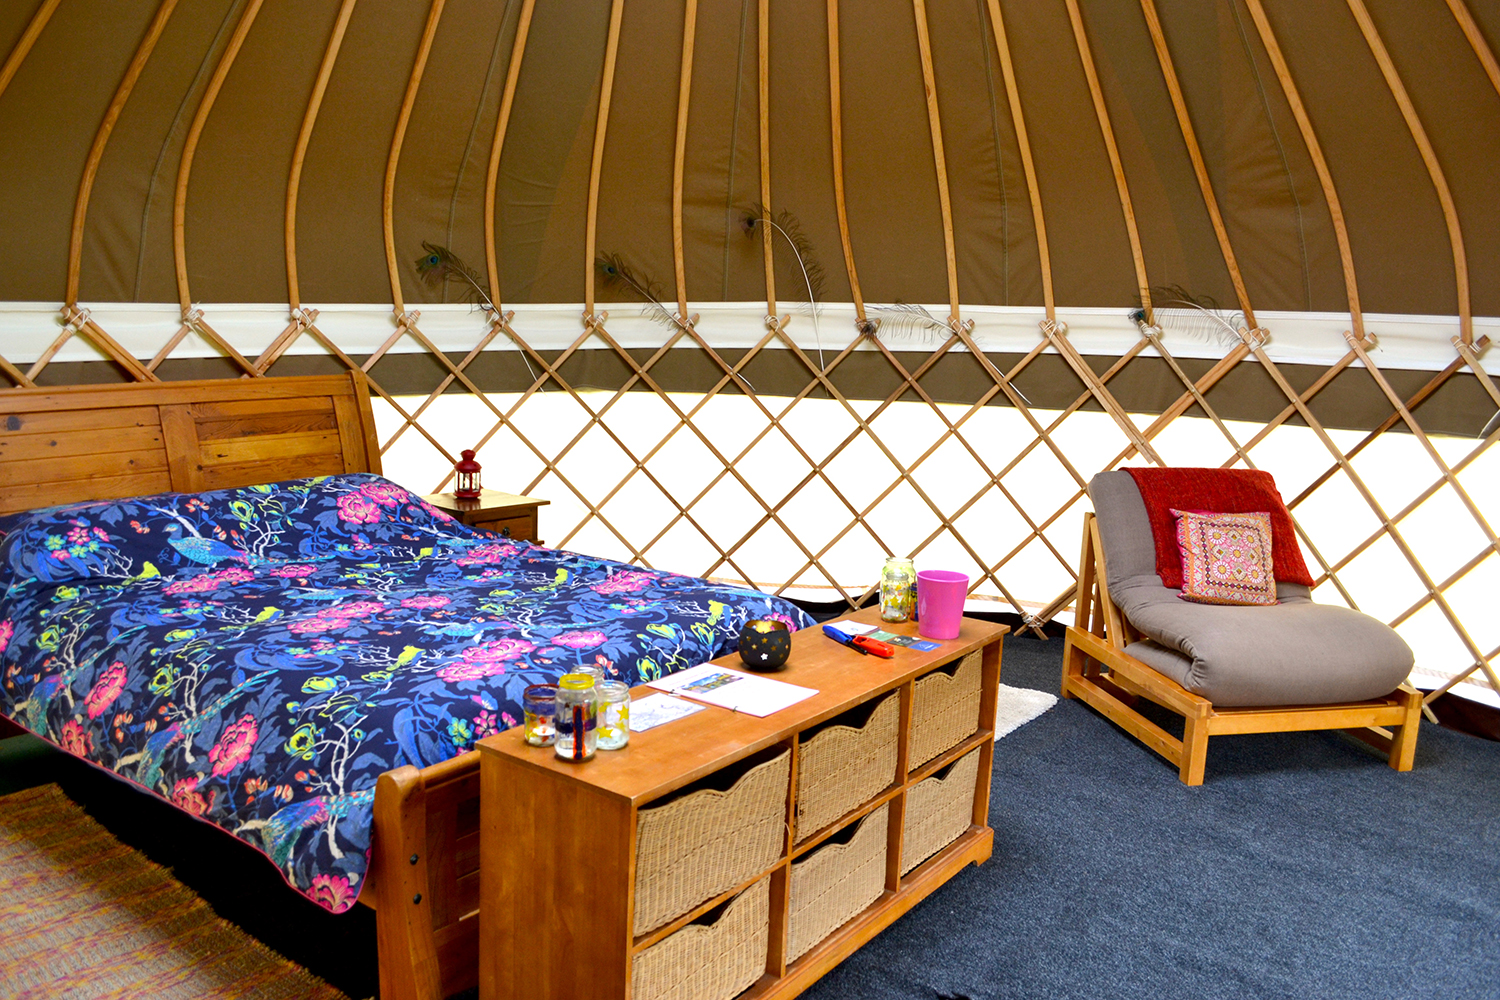 Bloomfields glamping yurt, Dorset